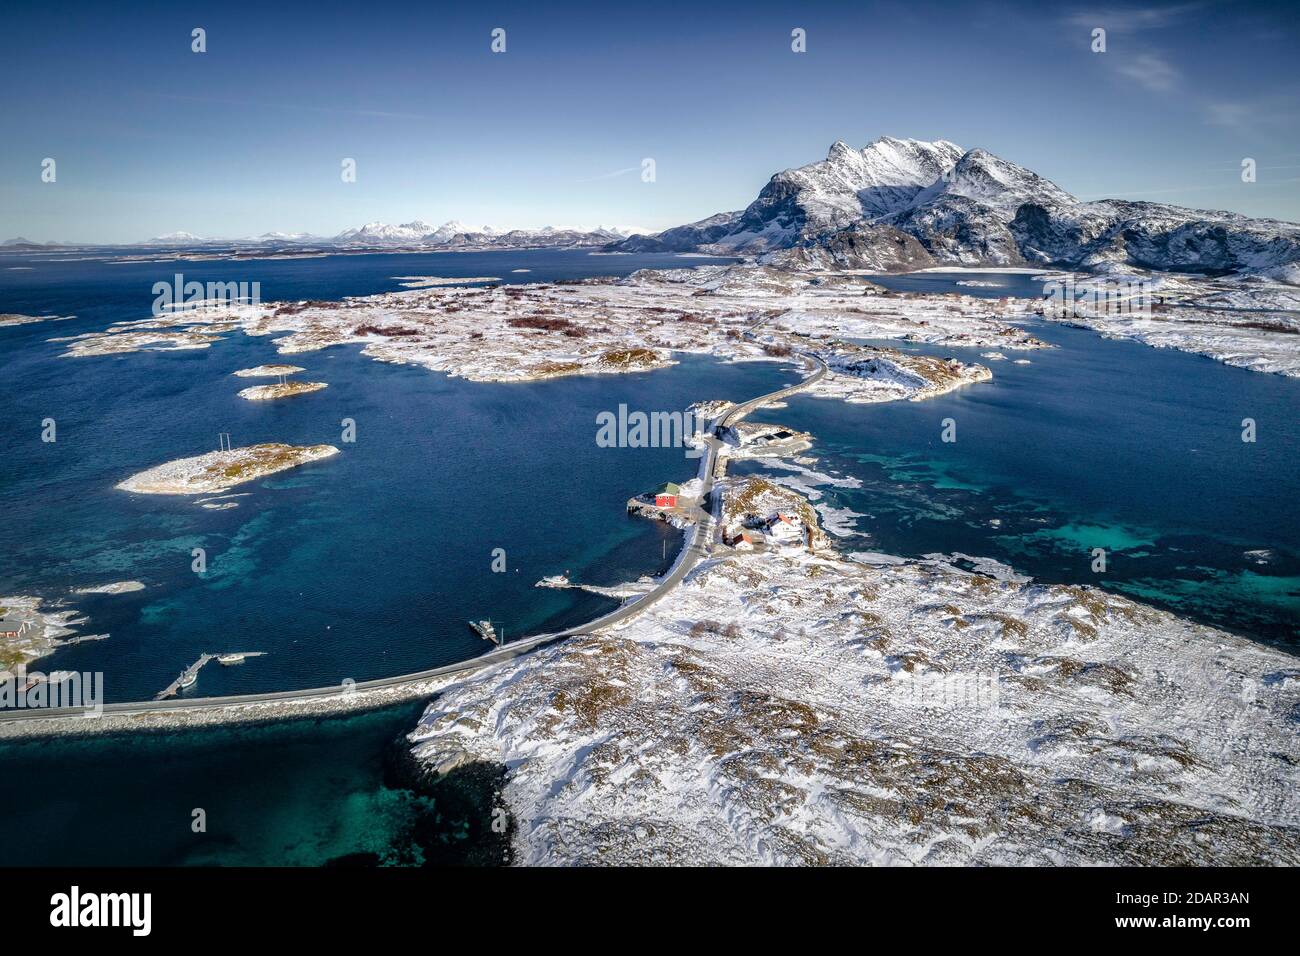 Vue aérienne, route de campagne à travers la mer relie les îles peuplées, petites, hivernales avec le continent, derrière les montagnes, Heroy, Nordland, Norvège Banque D'Images